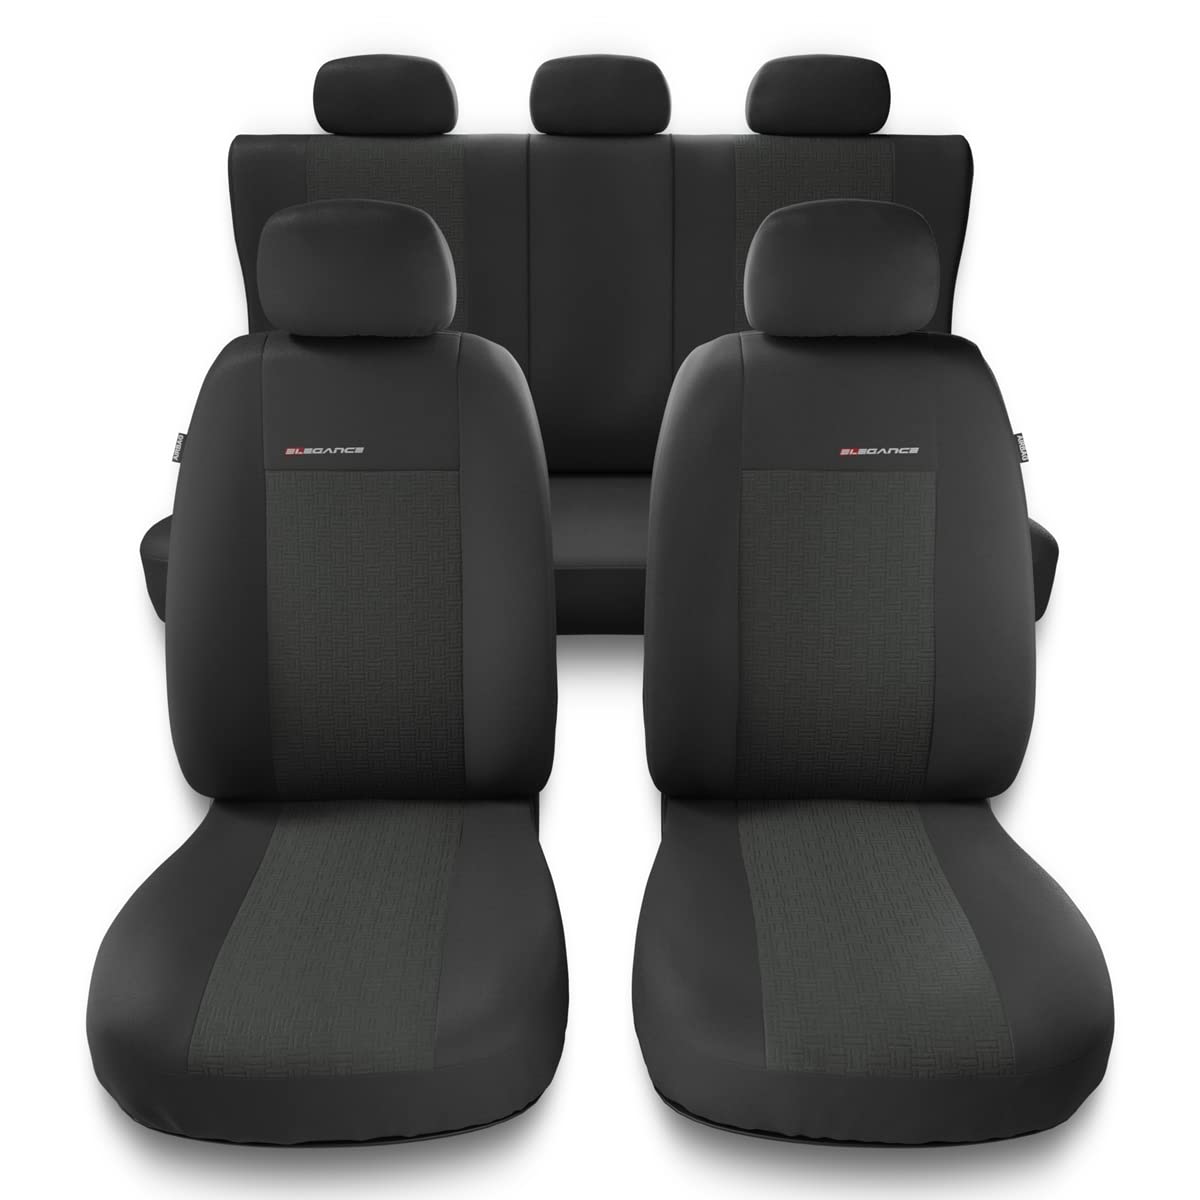 Mossa - Universal Sitzbezüge Auto kompatibel mit Audi A1 I, II (2010-2019) - Autositzbezüge Schonbezüge für Autositze - UNE-1 von Mossa